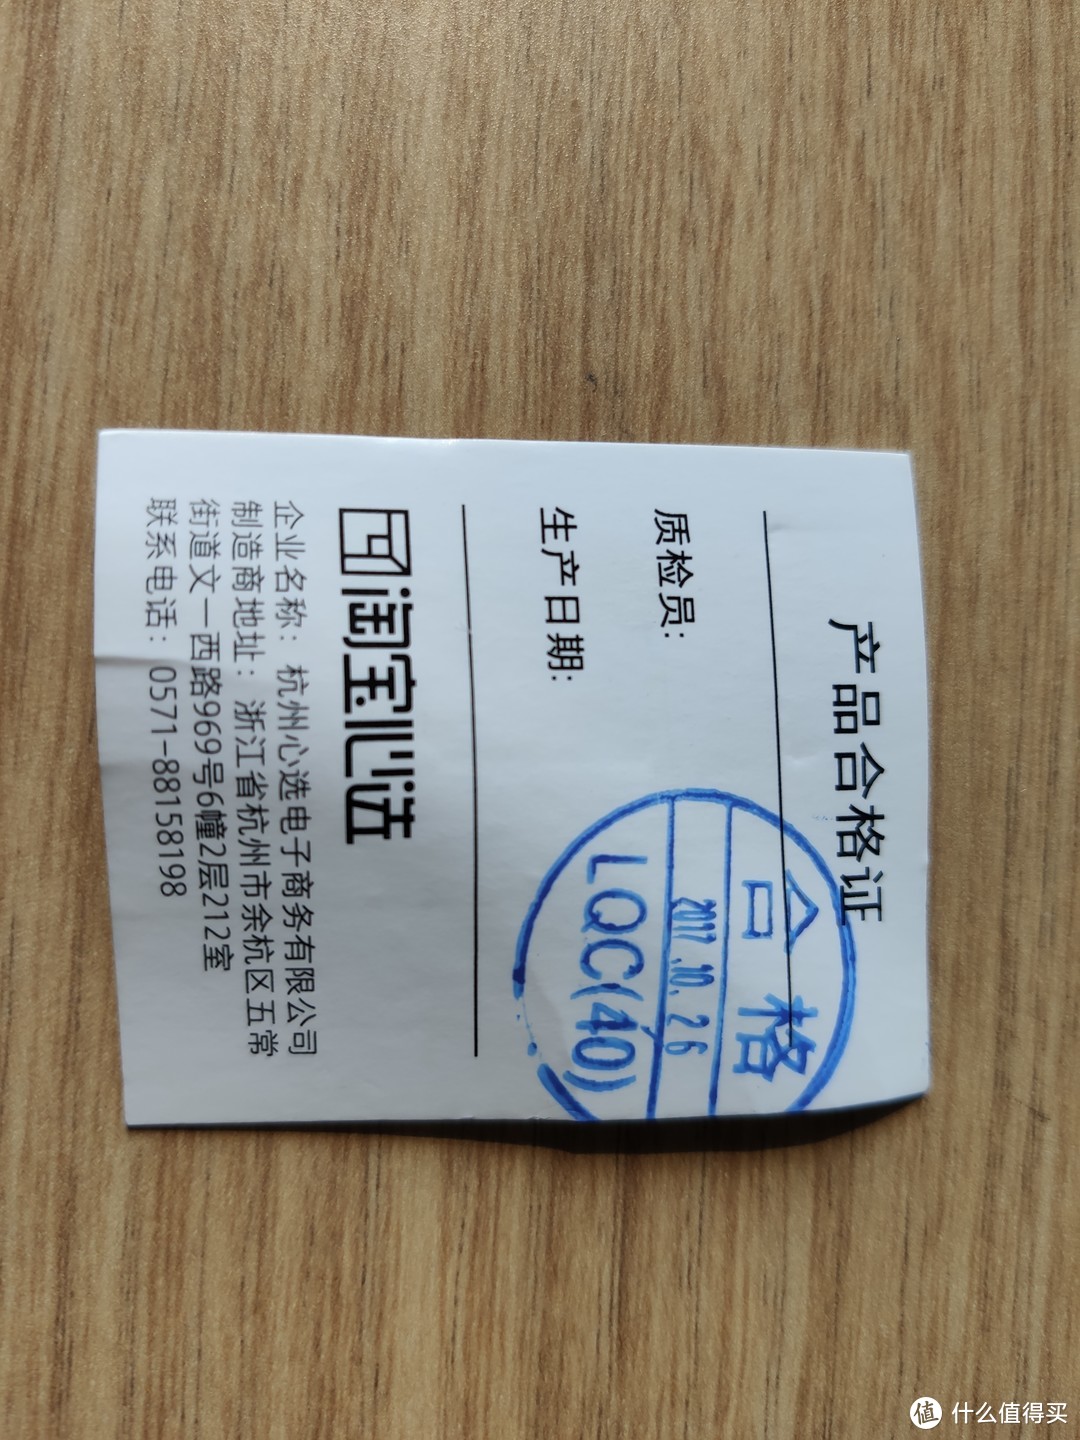 【国庆七天乐】众测实惠福袋评测——淘宝心选保温罐